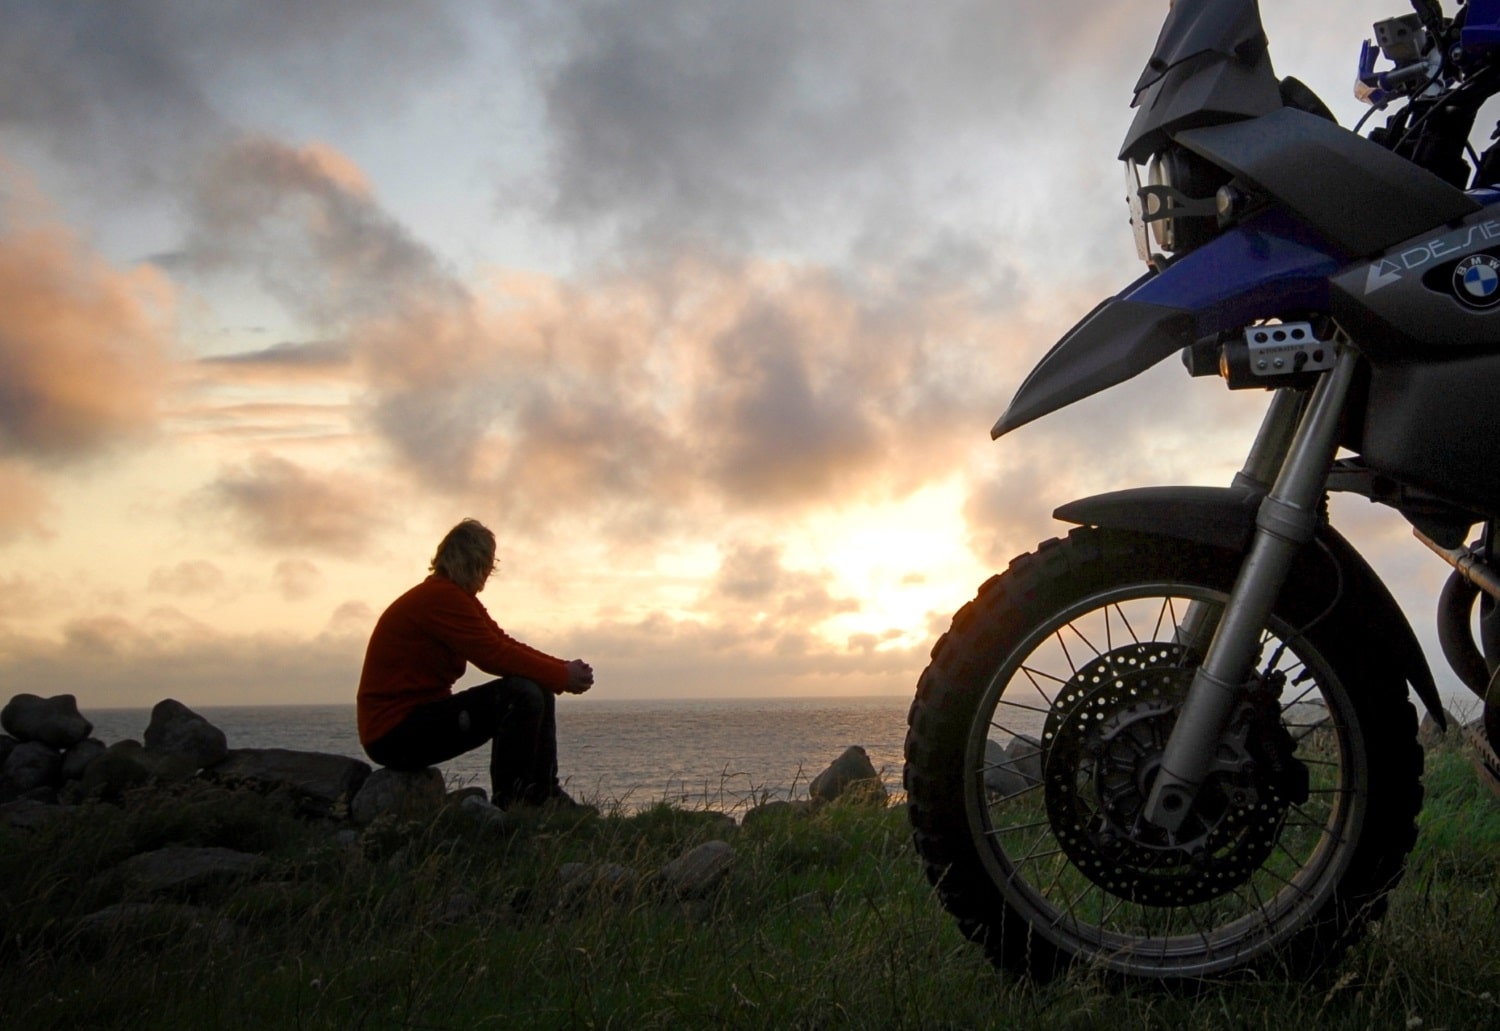 Moto-pneumatici.it chiama a raccolta i motociclisti per la terza “Biker Summer 2015” 3